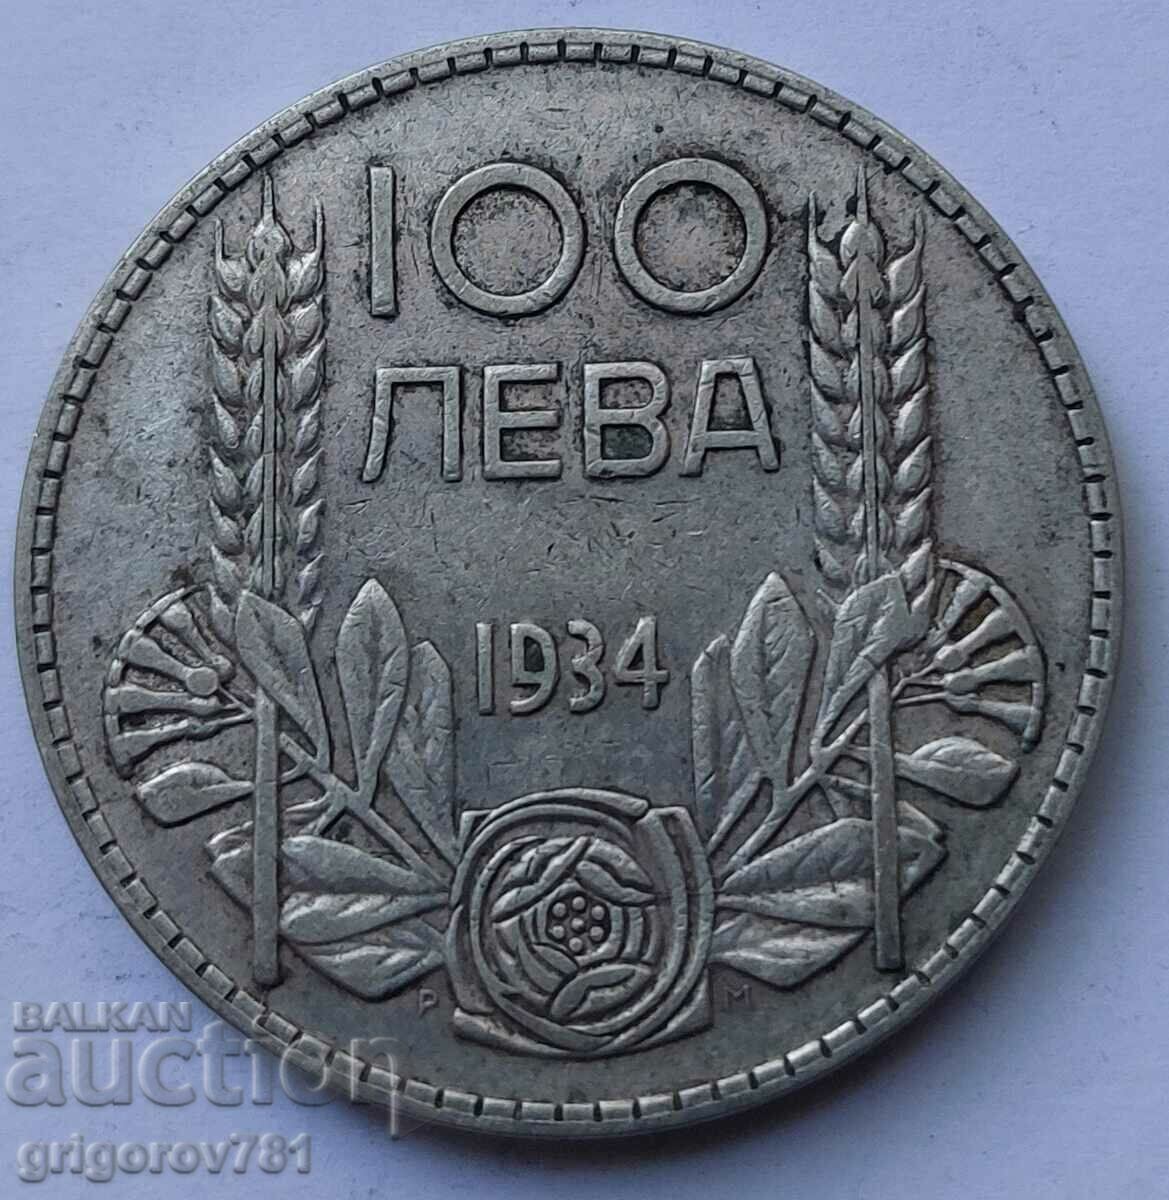 100 leva argint Bulgaria 1934 - monedă de argint #57